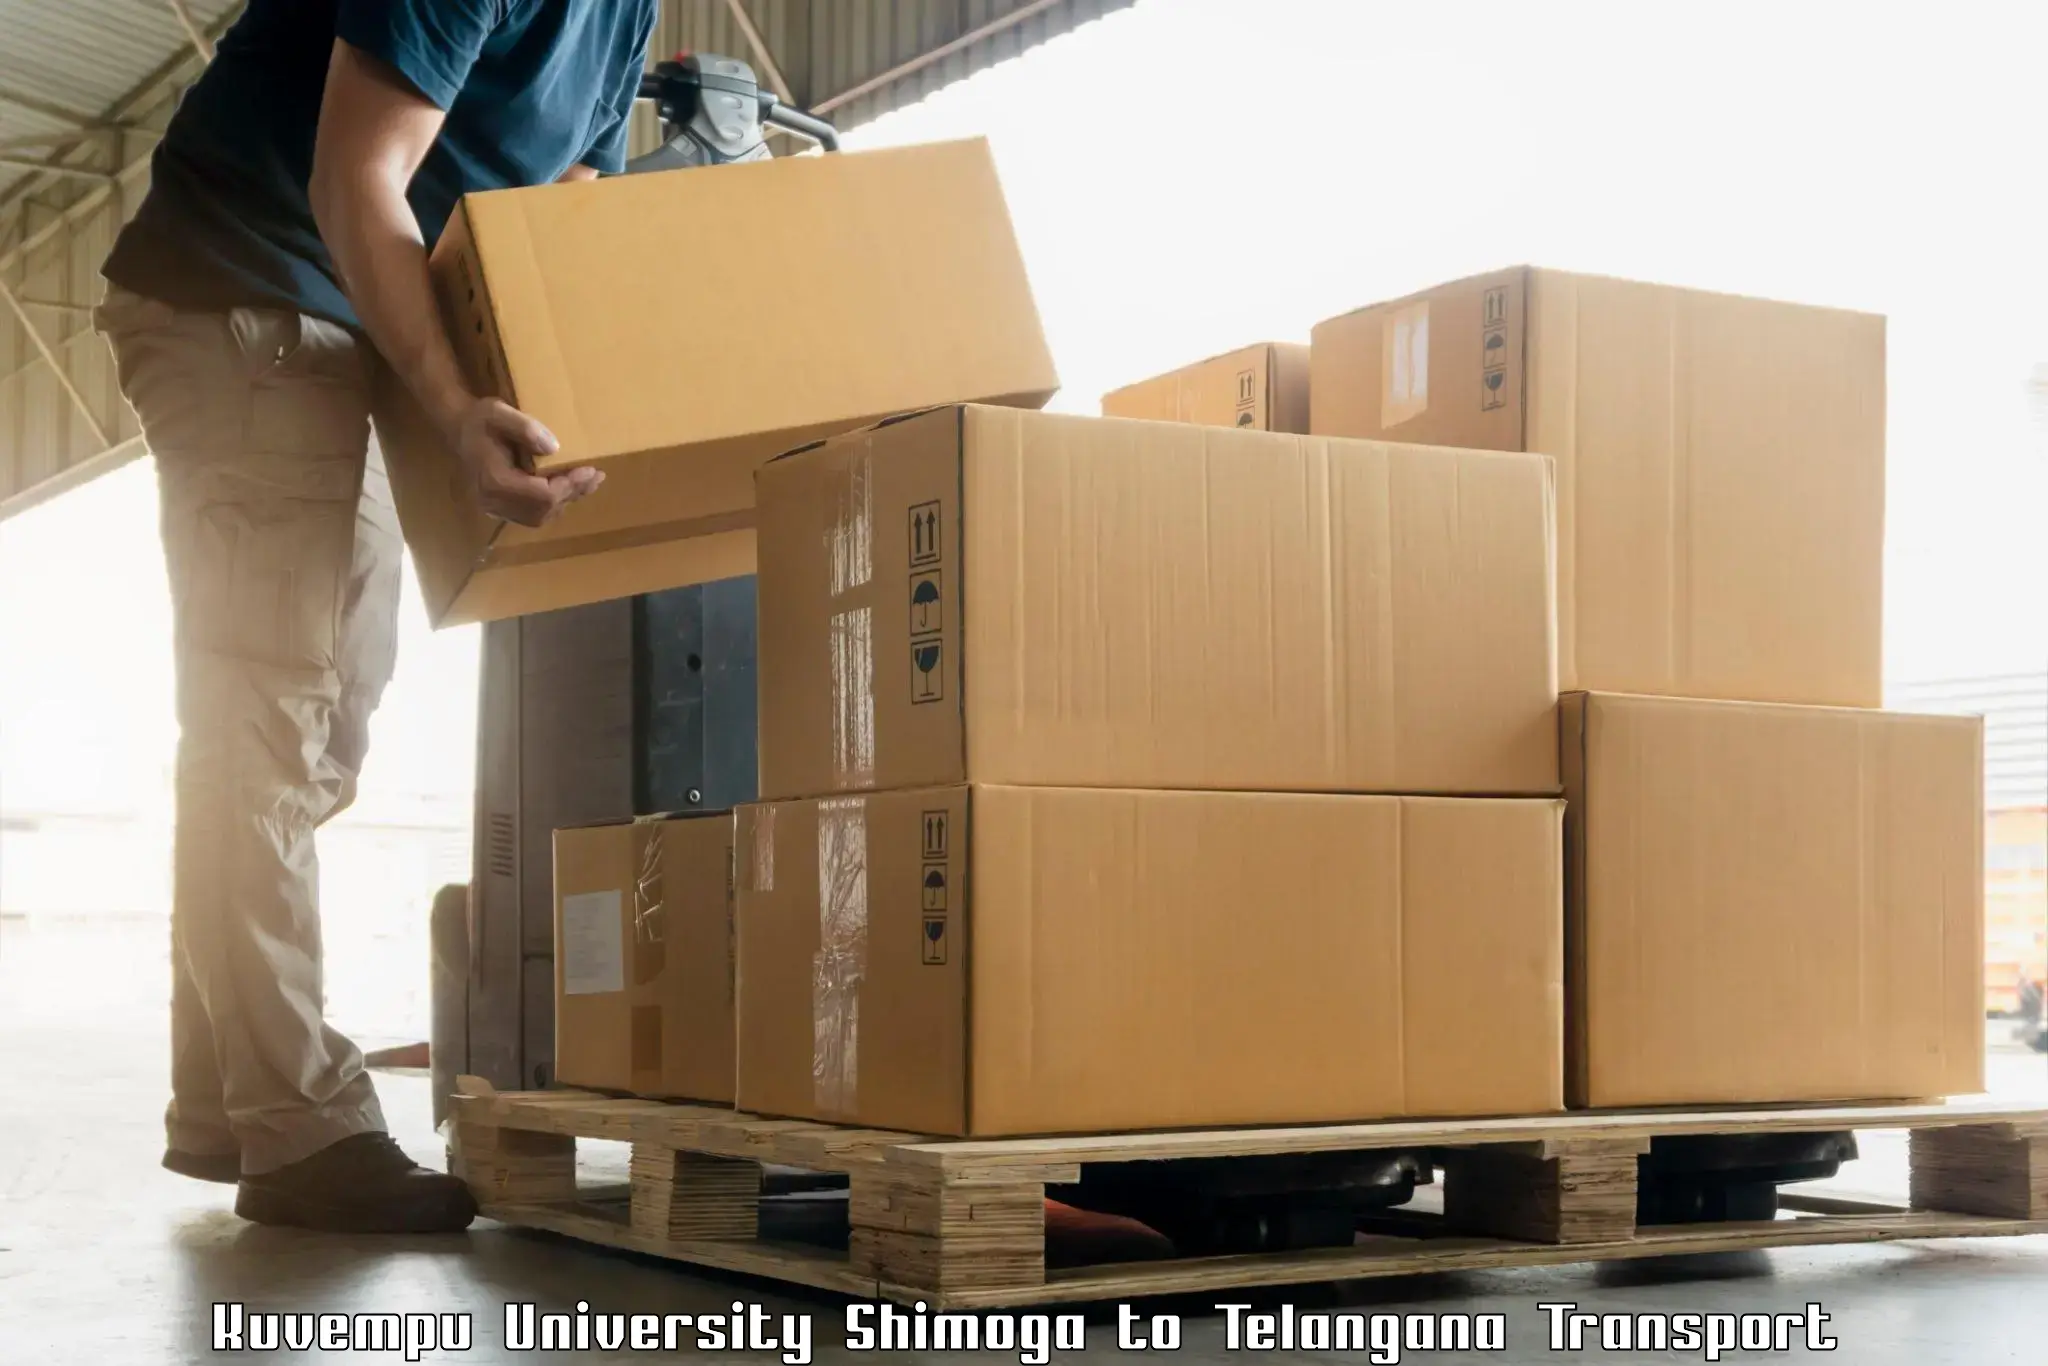 Luggage transport services Kuvempu University Shimoga to Danthalapally